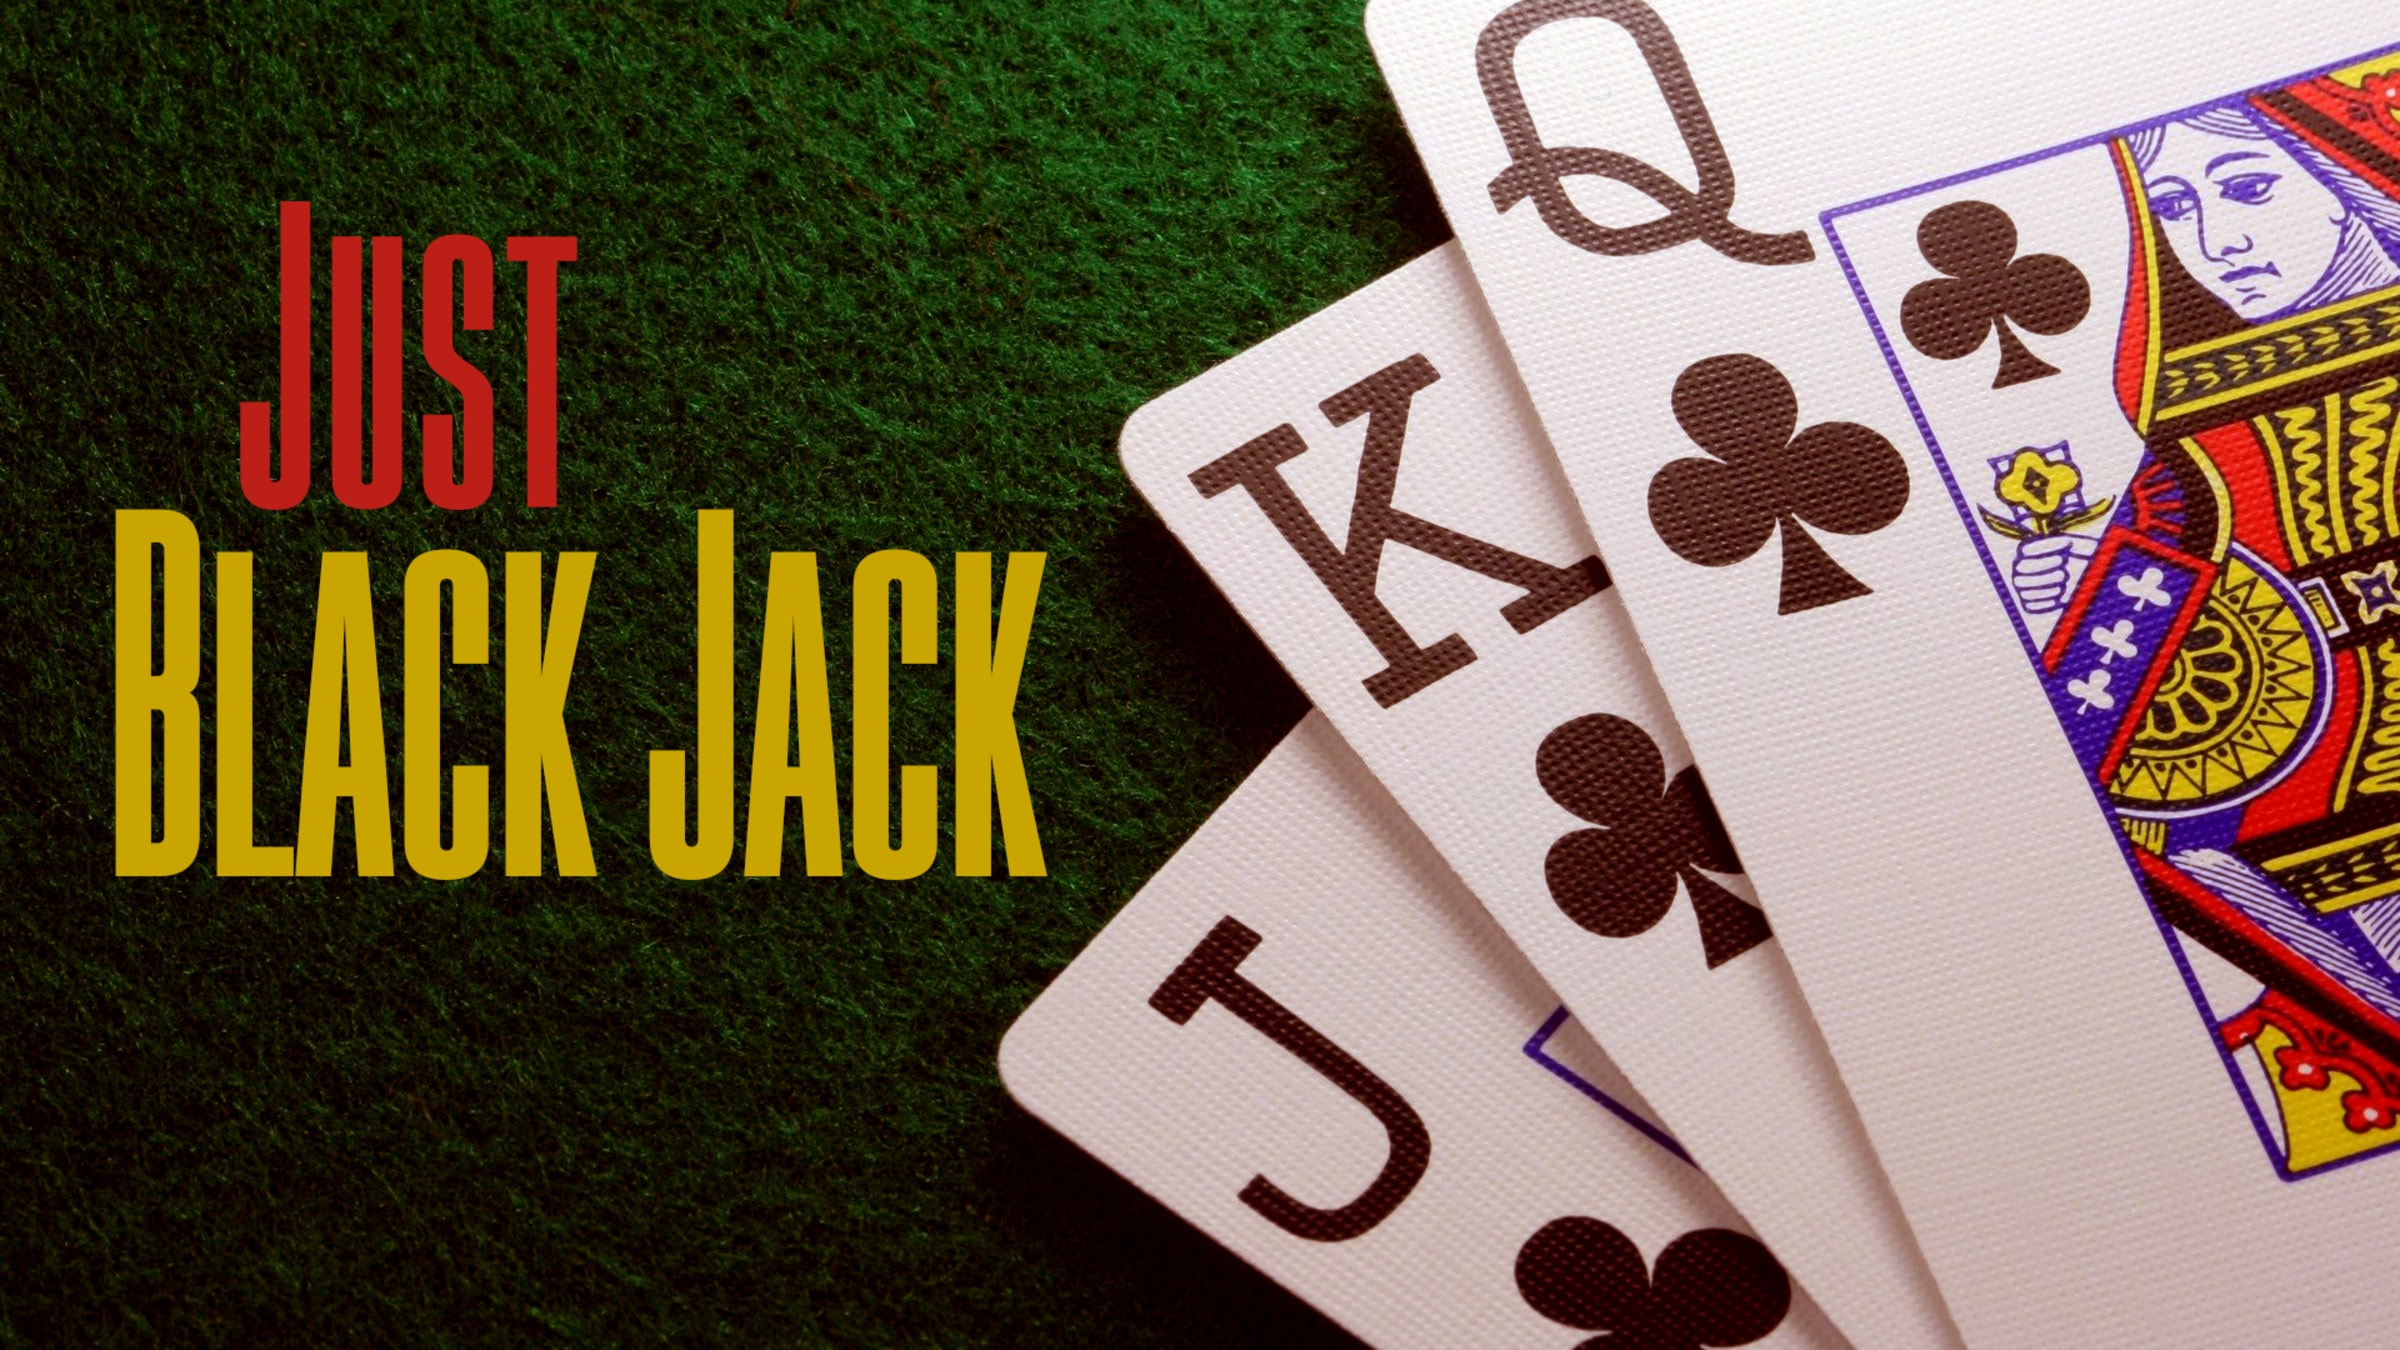 Por qué jugar Blackjack Switch